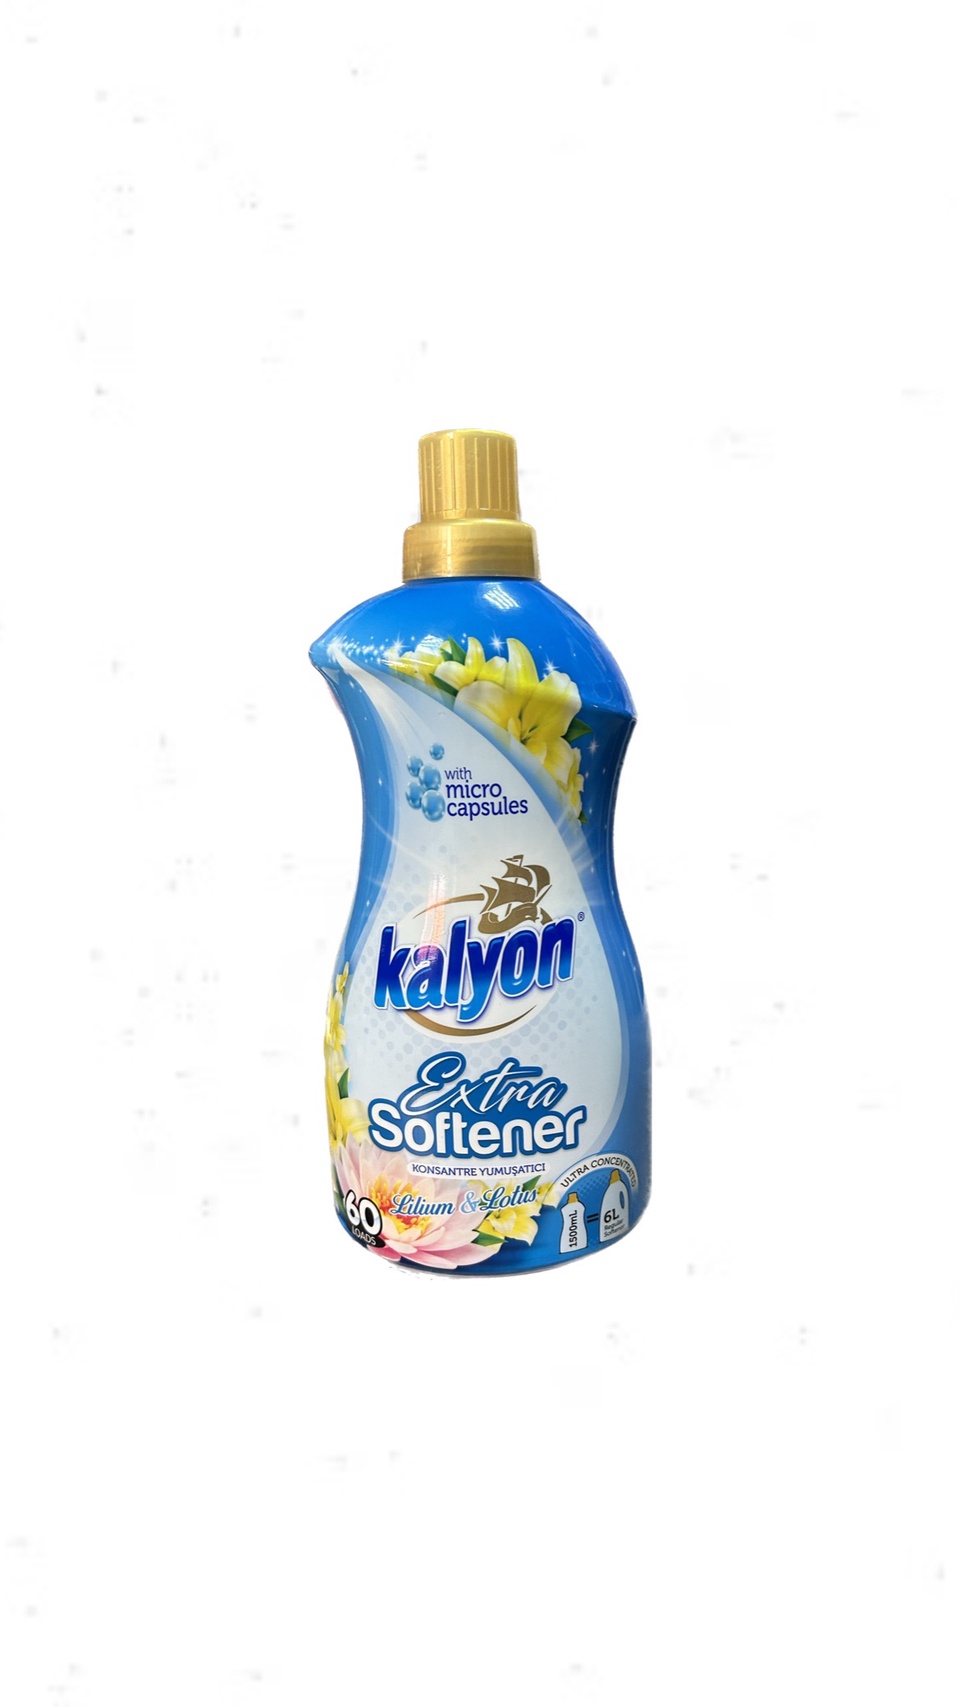 Кондиционер для белья Kalyon концентрат 1,5л. «Лилия и лотос» - 400 ₽, заказать онлайн.